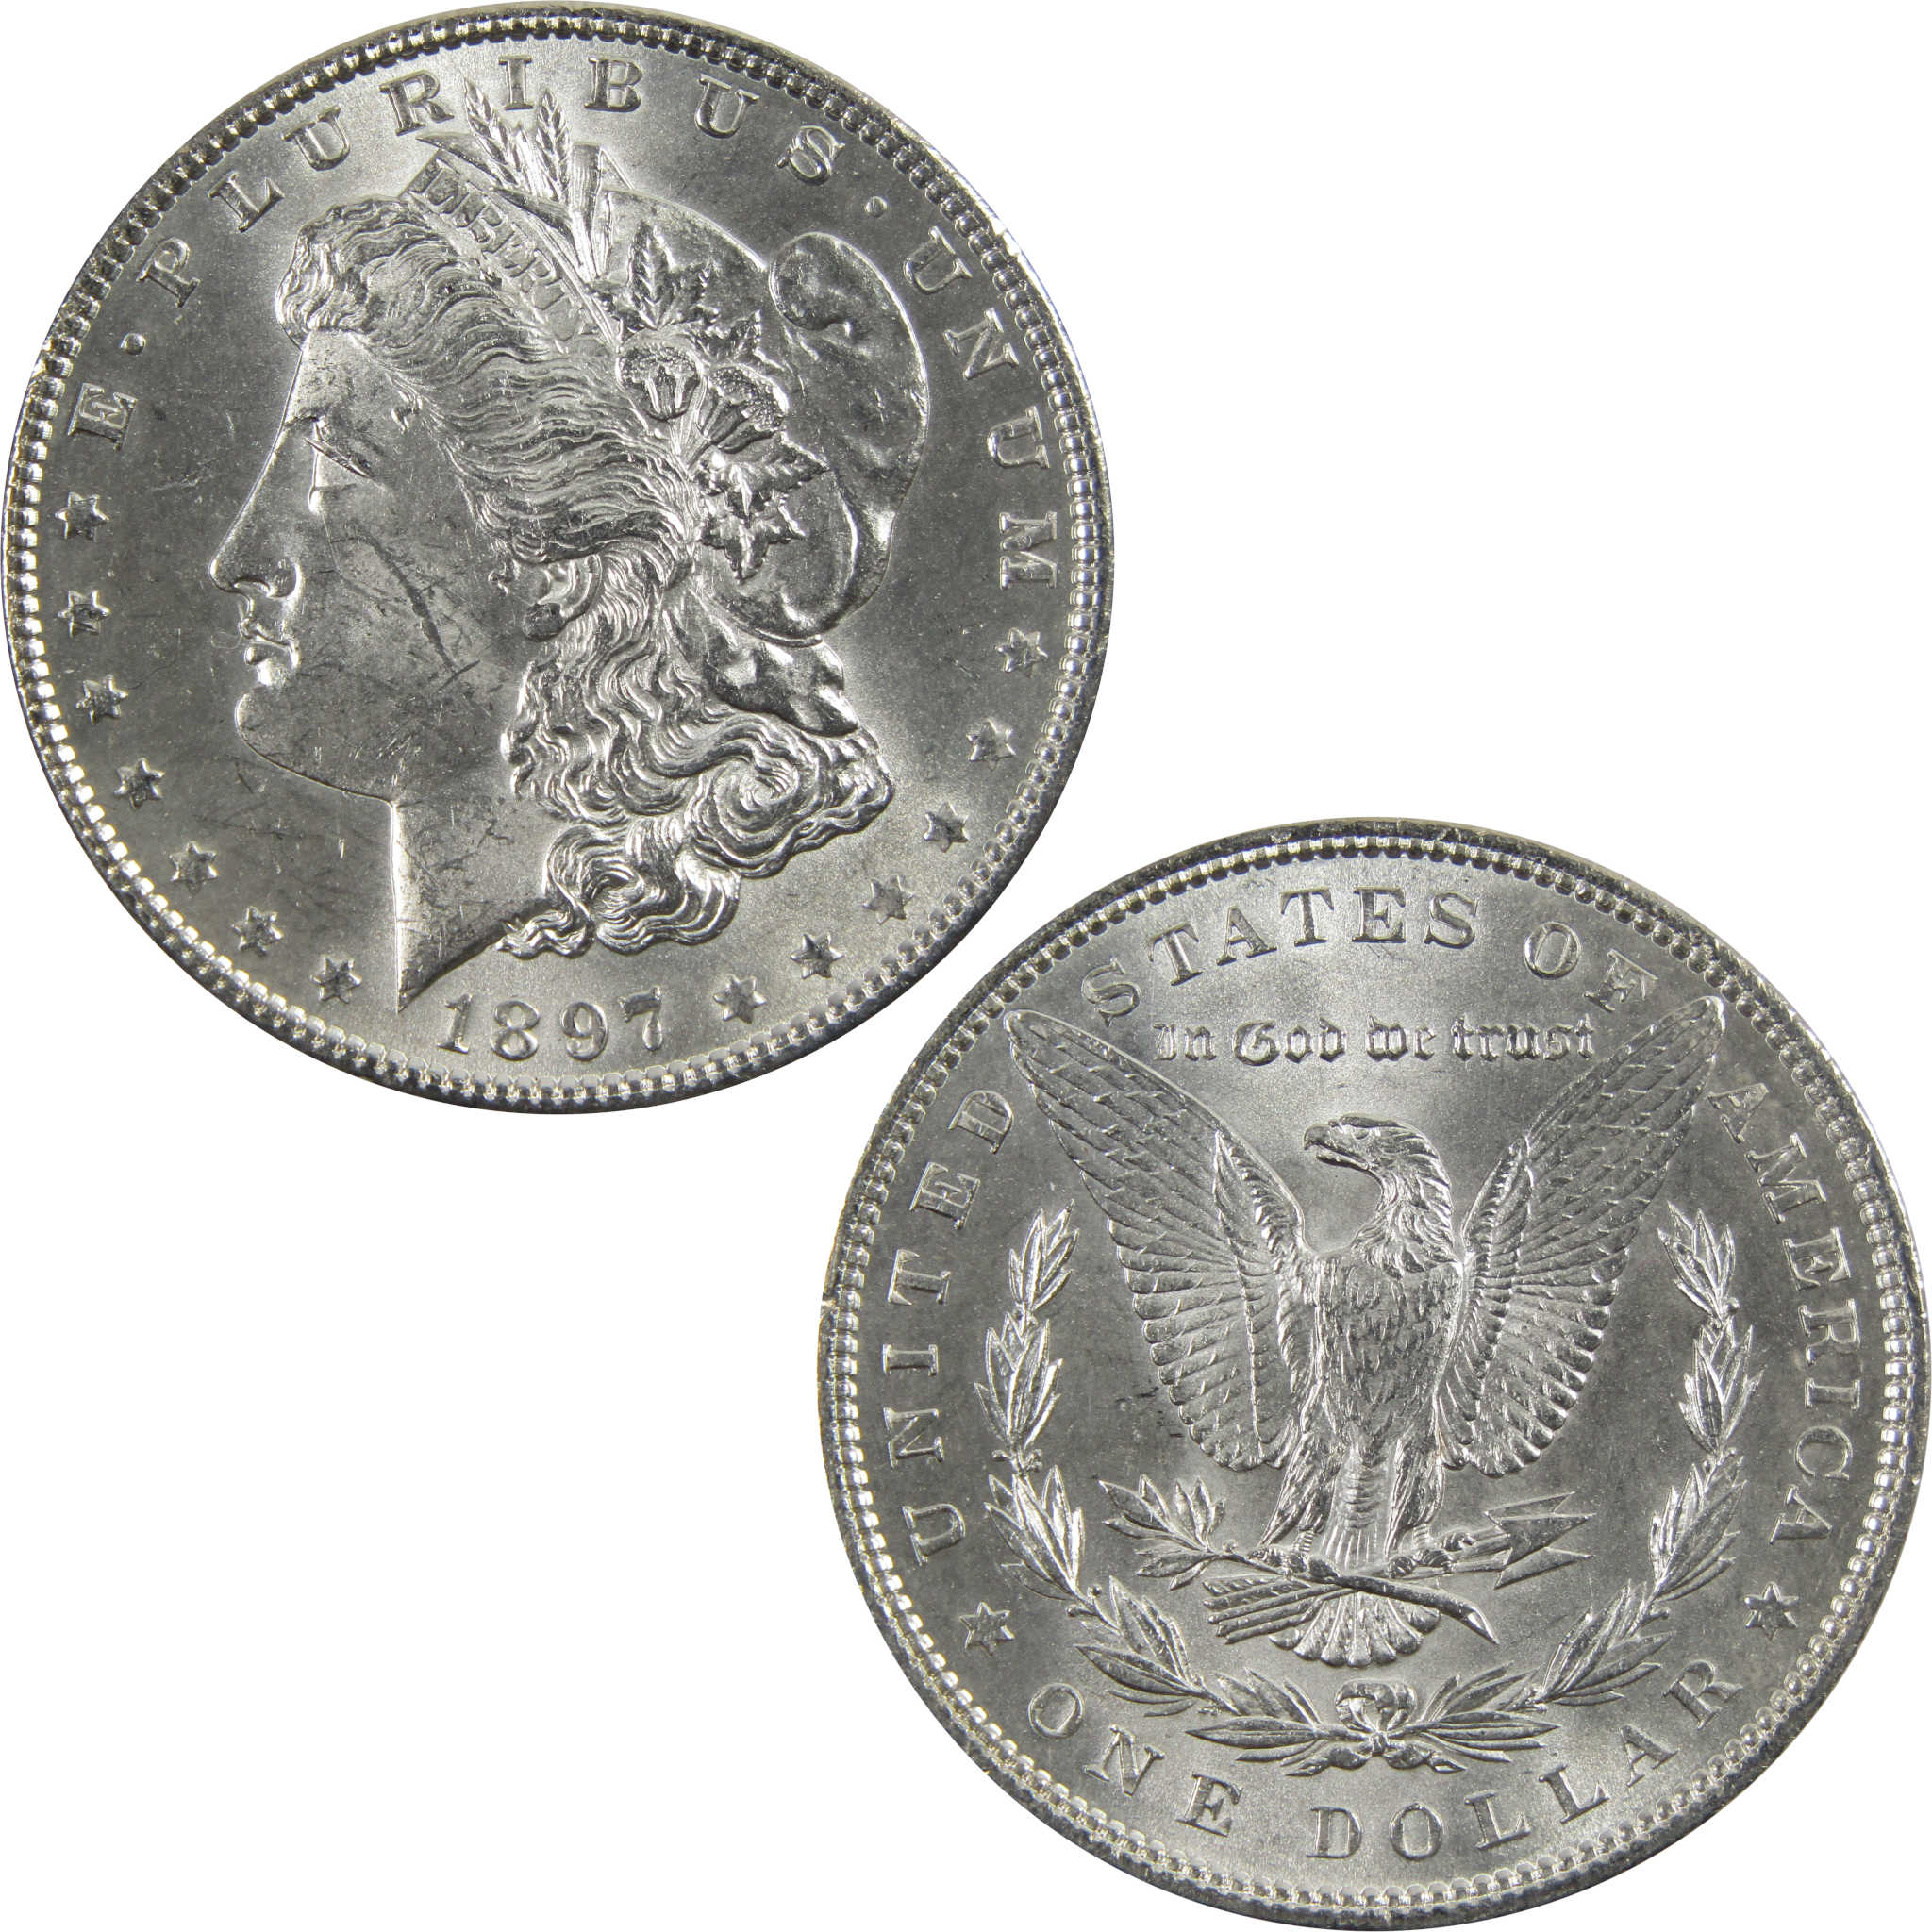 1897 Morgan Dollar BU Uncirculated 90% Silver $1 Coin SKU:I5149 - Morgan coin - Morgan silver dollar - Morgan silver dollar for sale - Profile Coins &amp; Collectibles